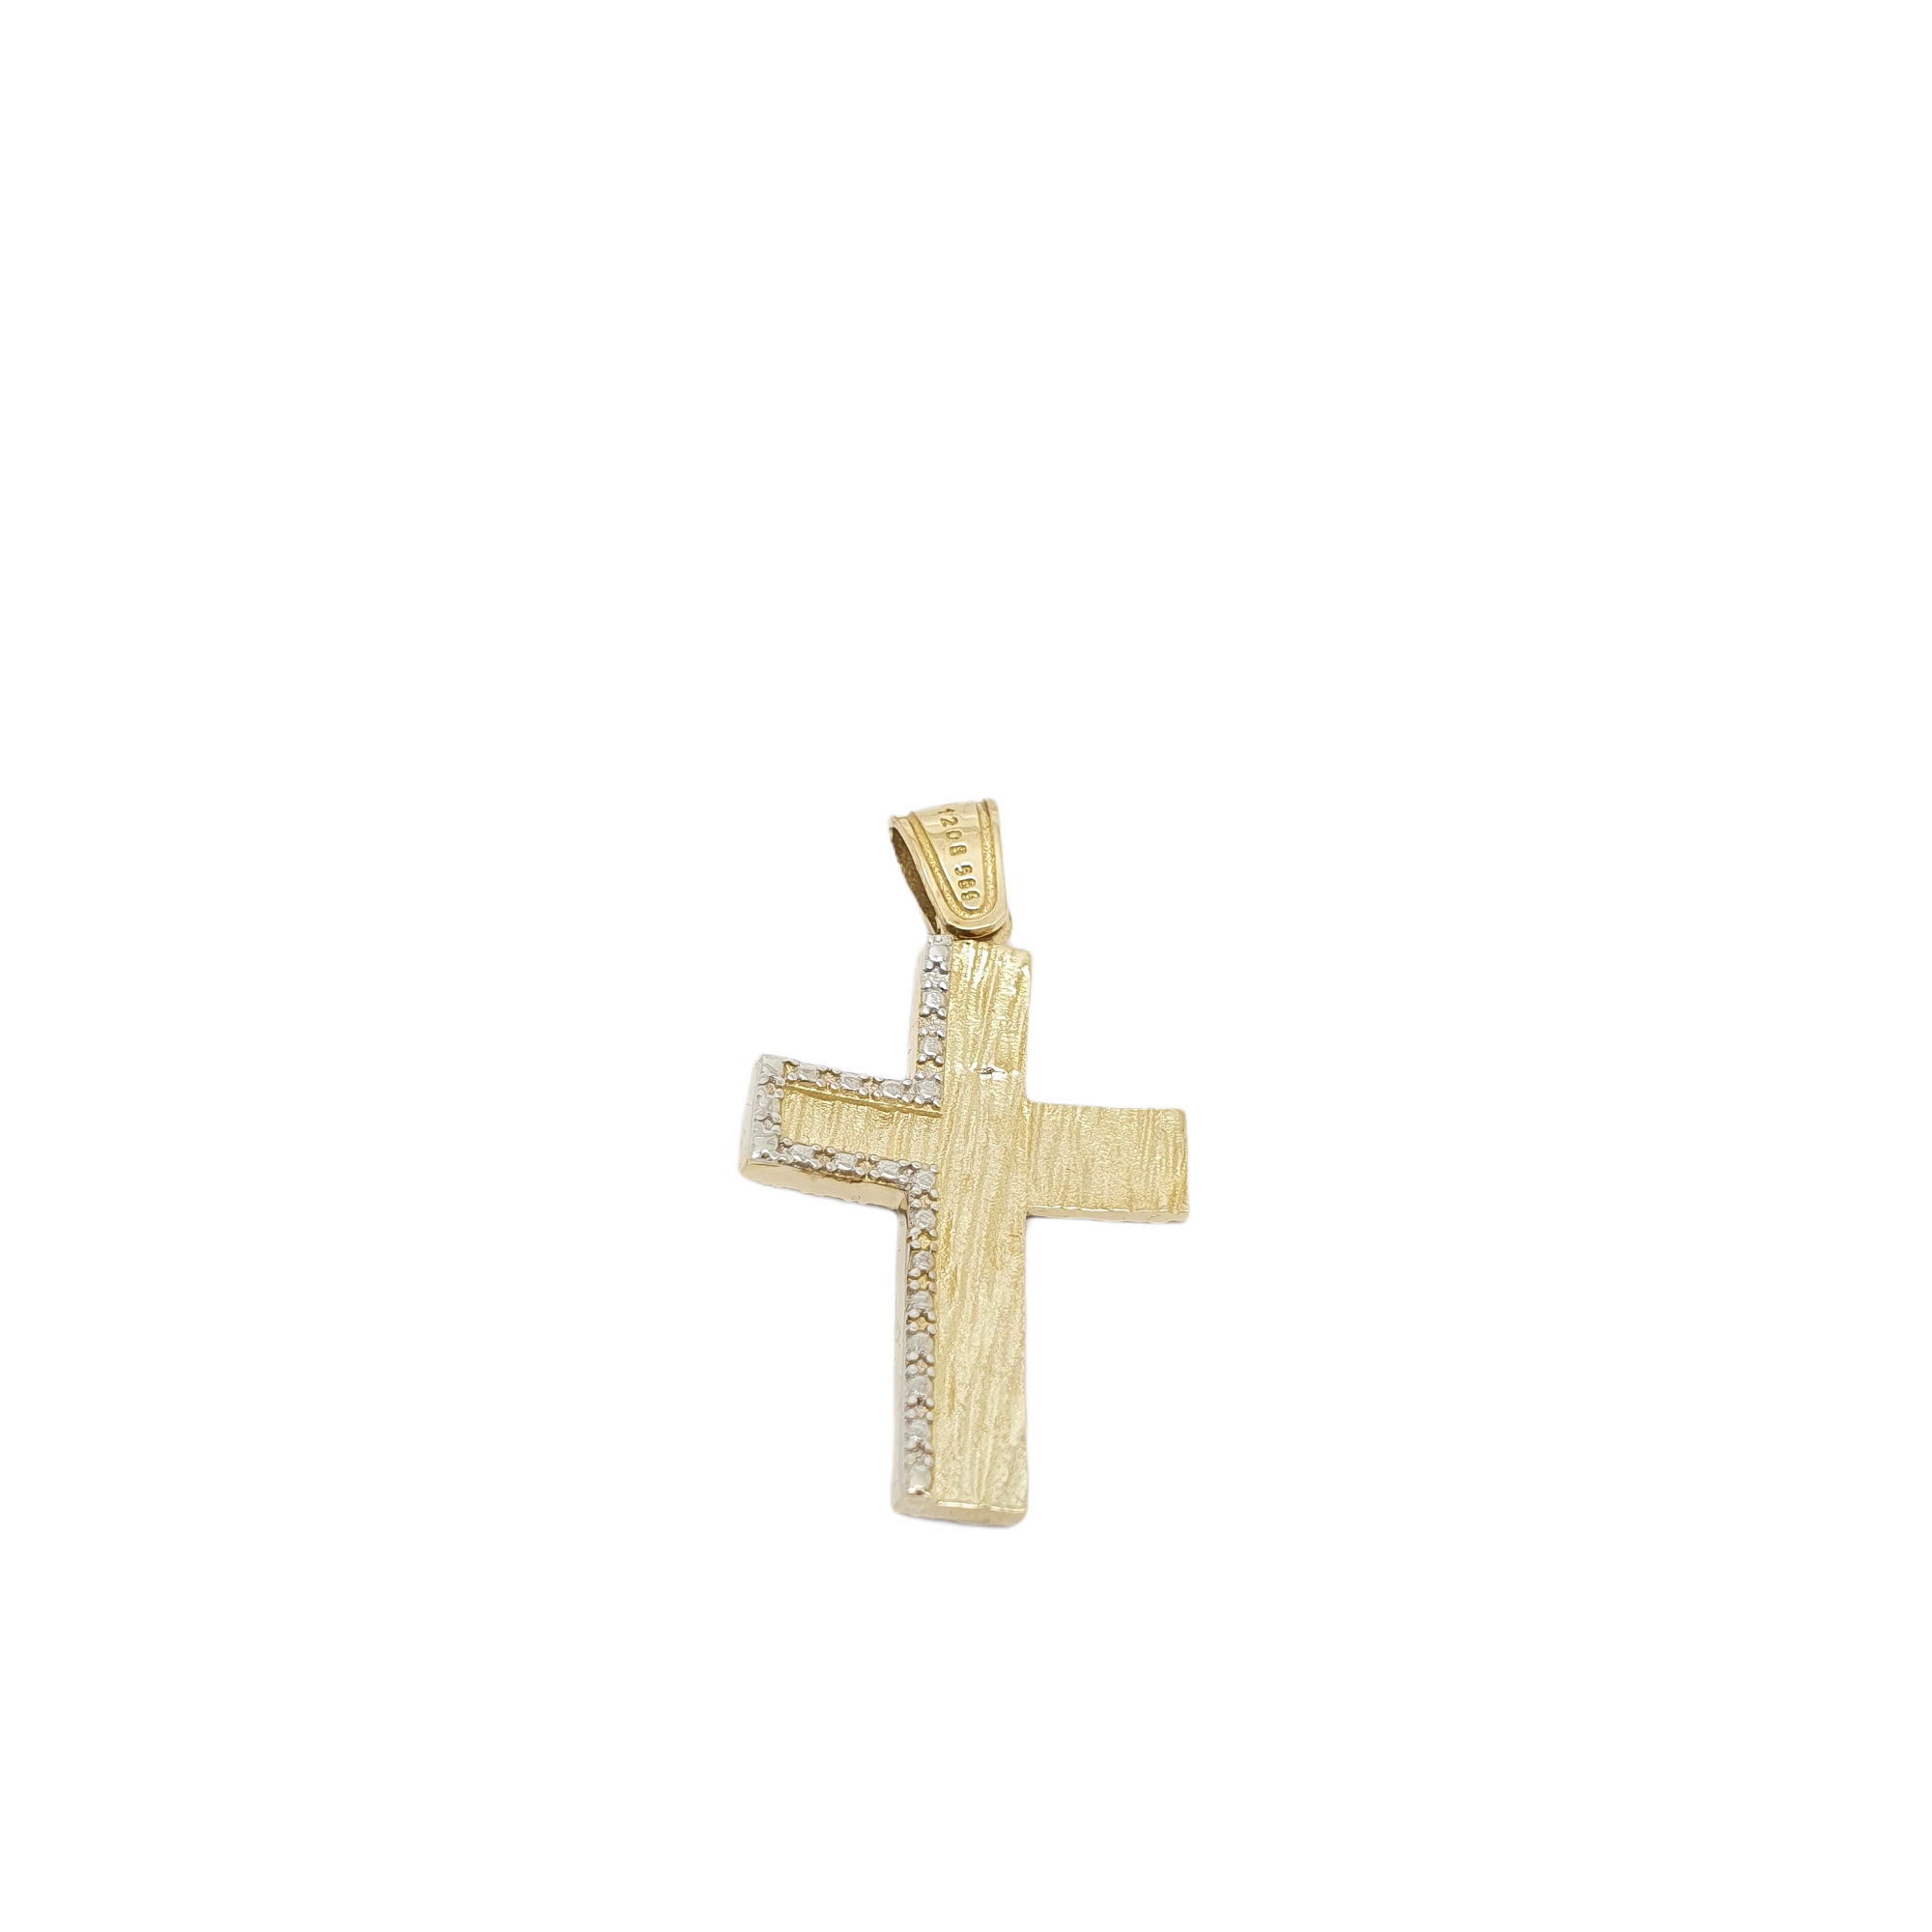 Golden cross k14 with zircon (code H1891)